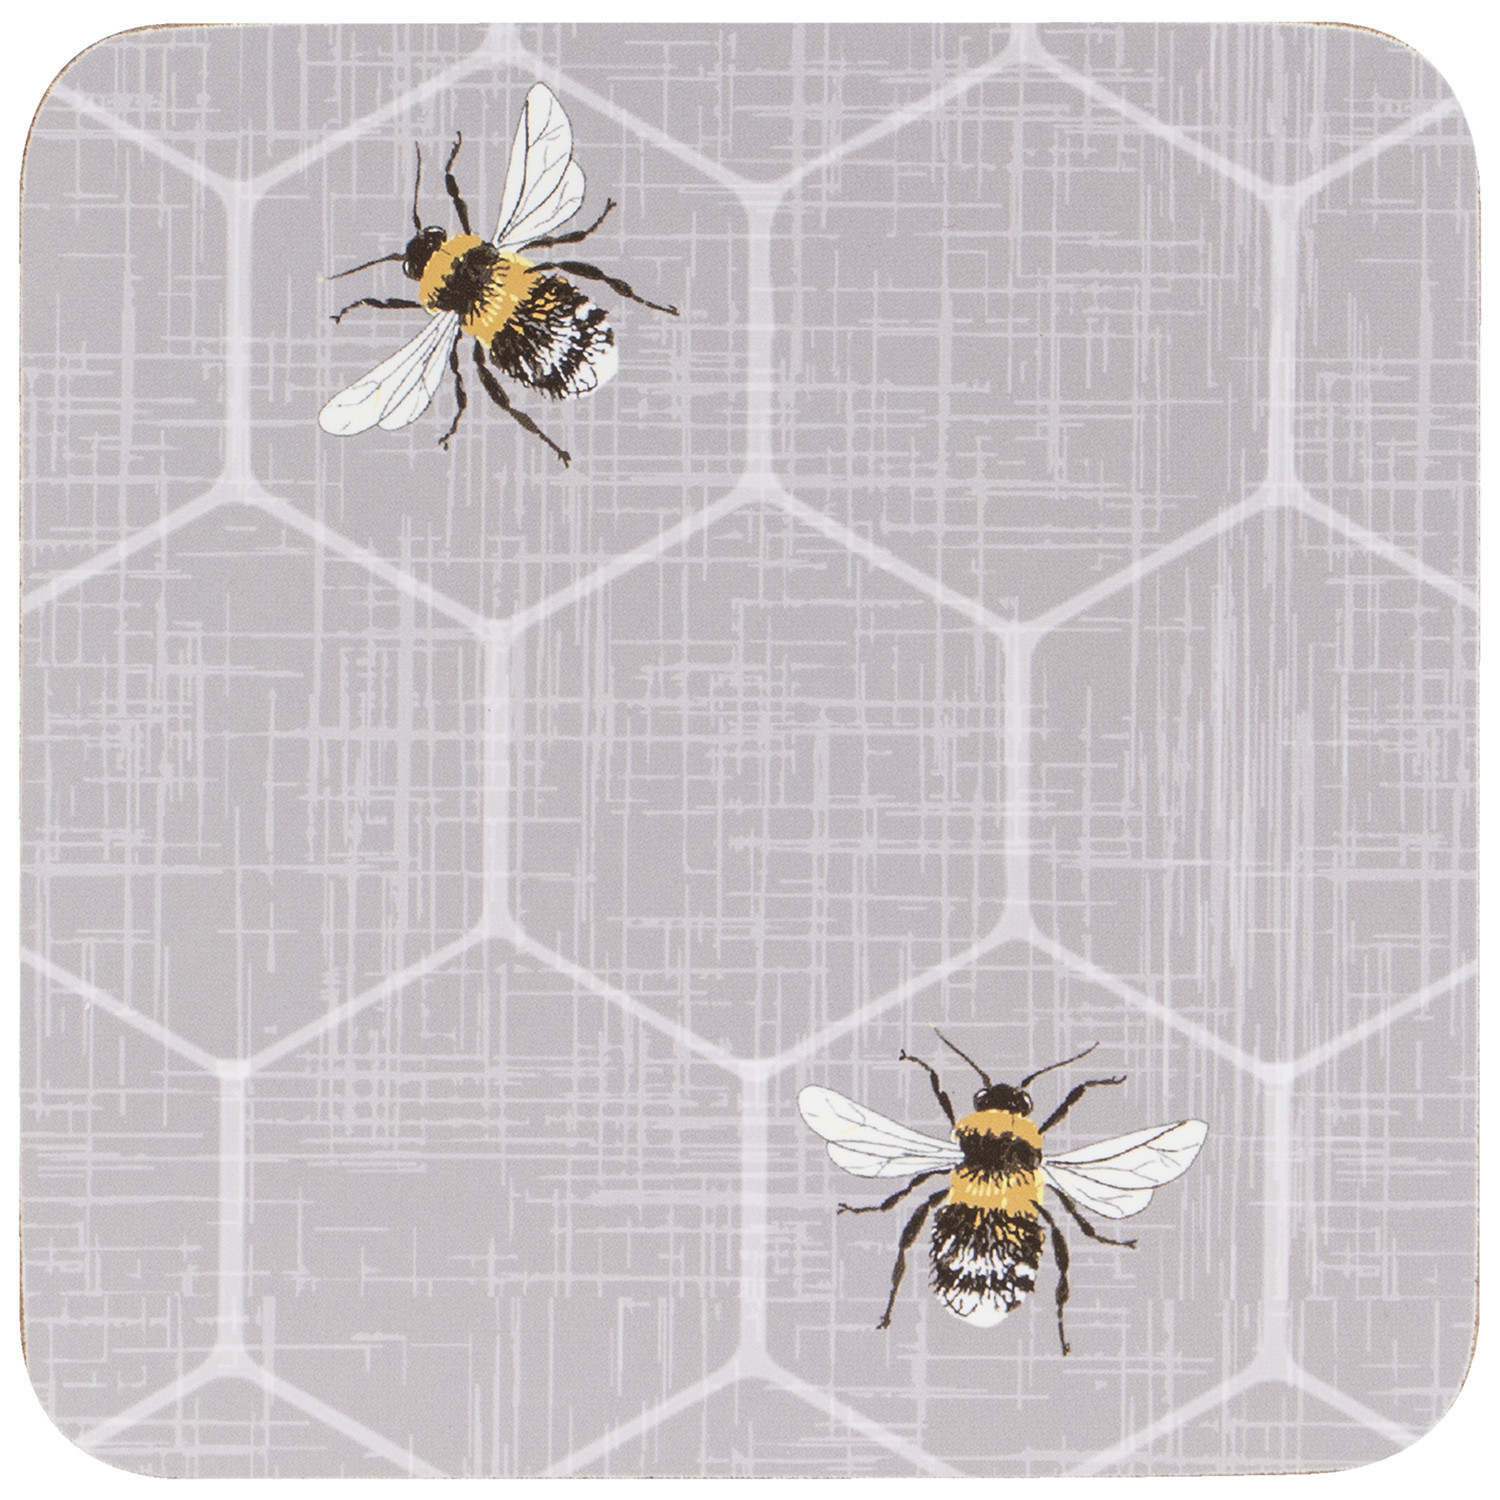 Impress Honey Bee Coaster 6 Pack Image 1